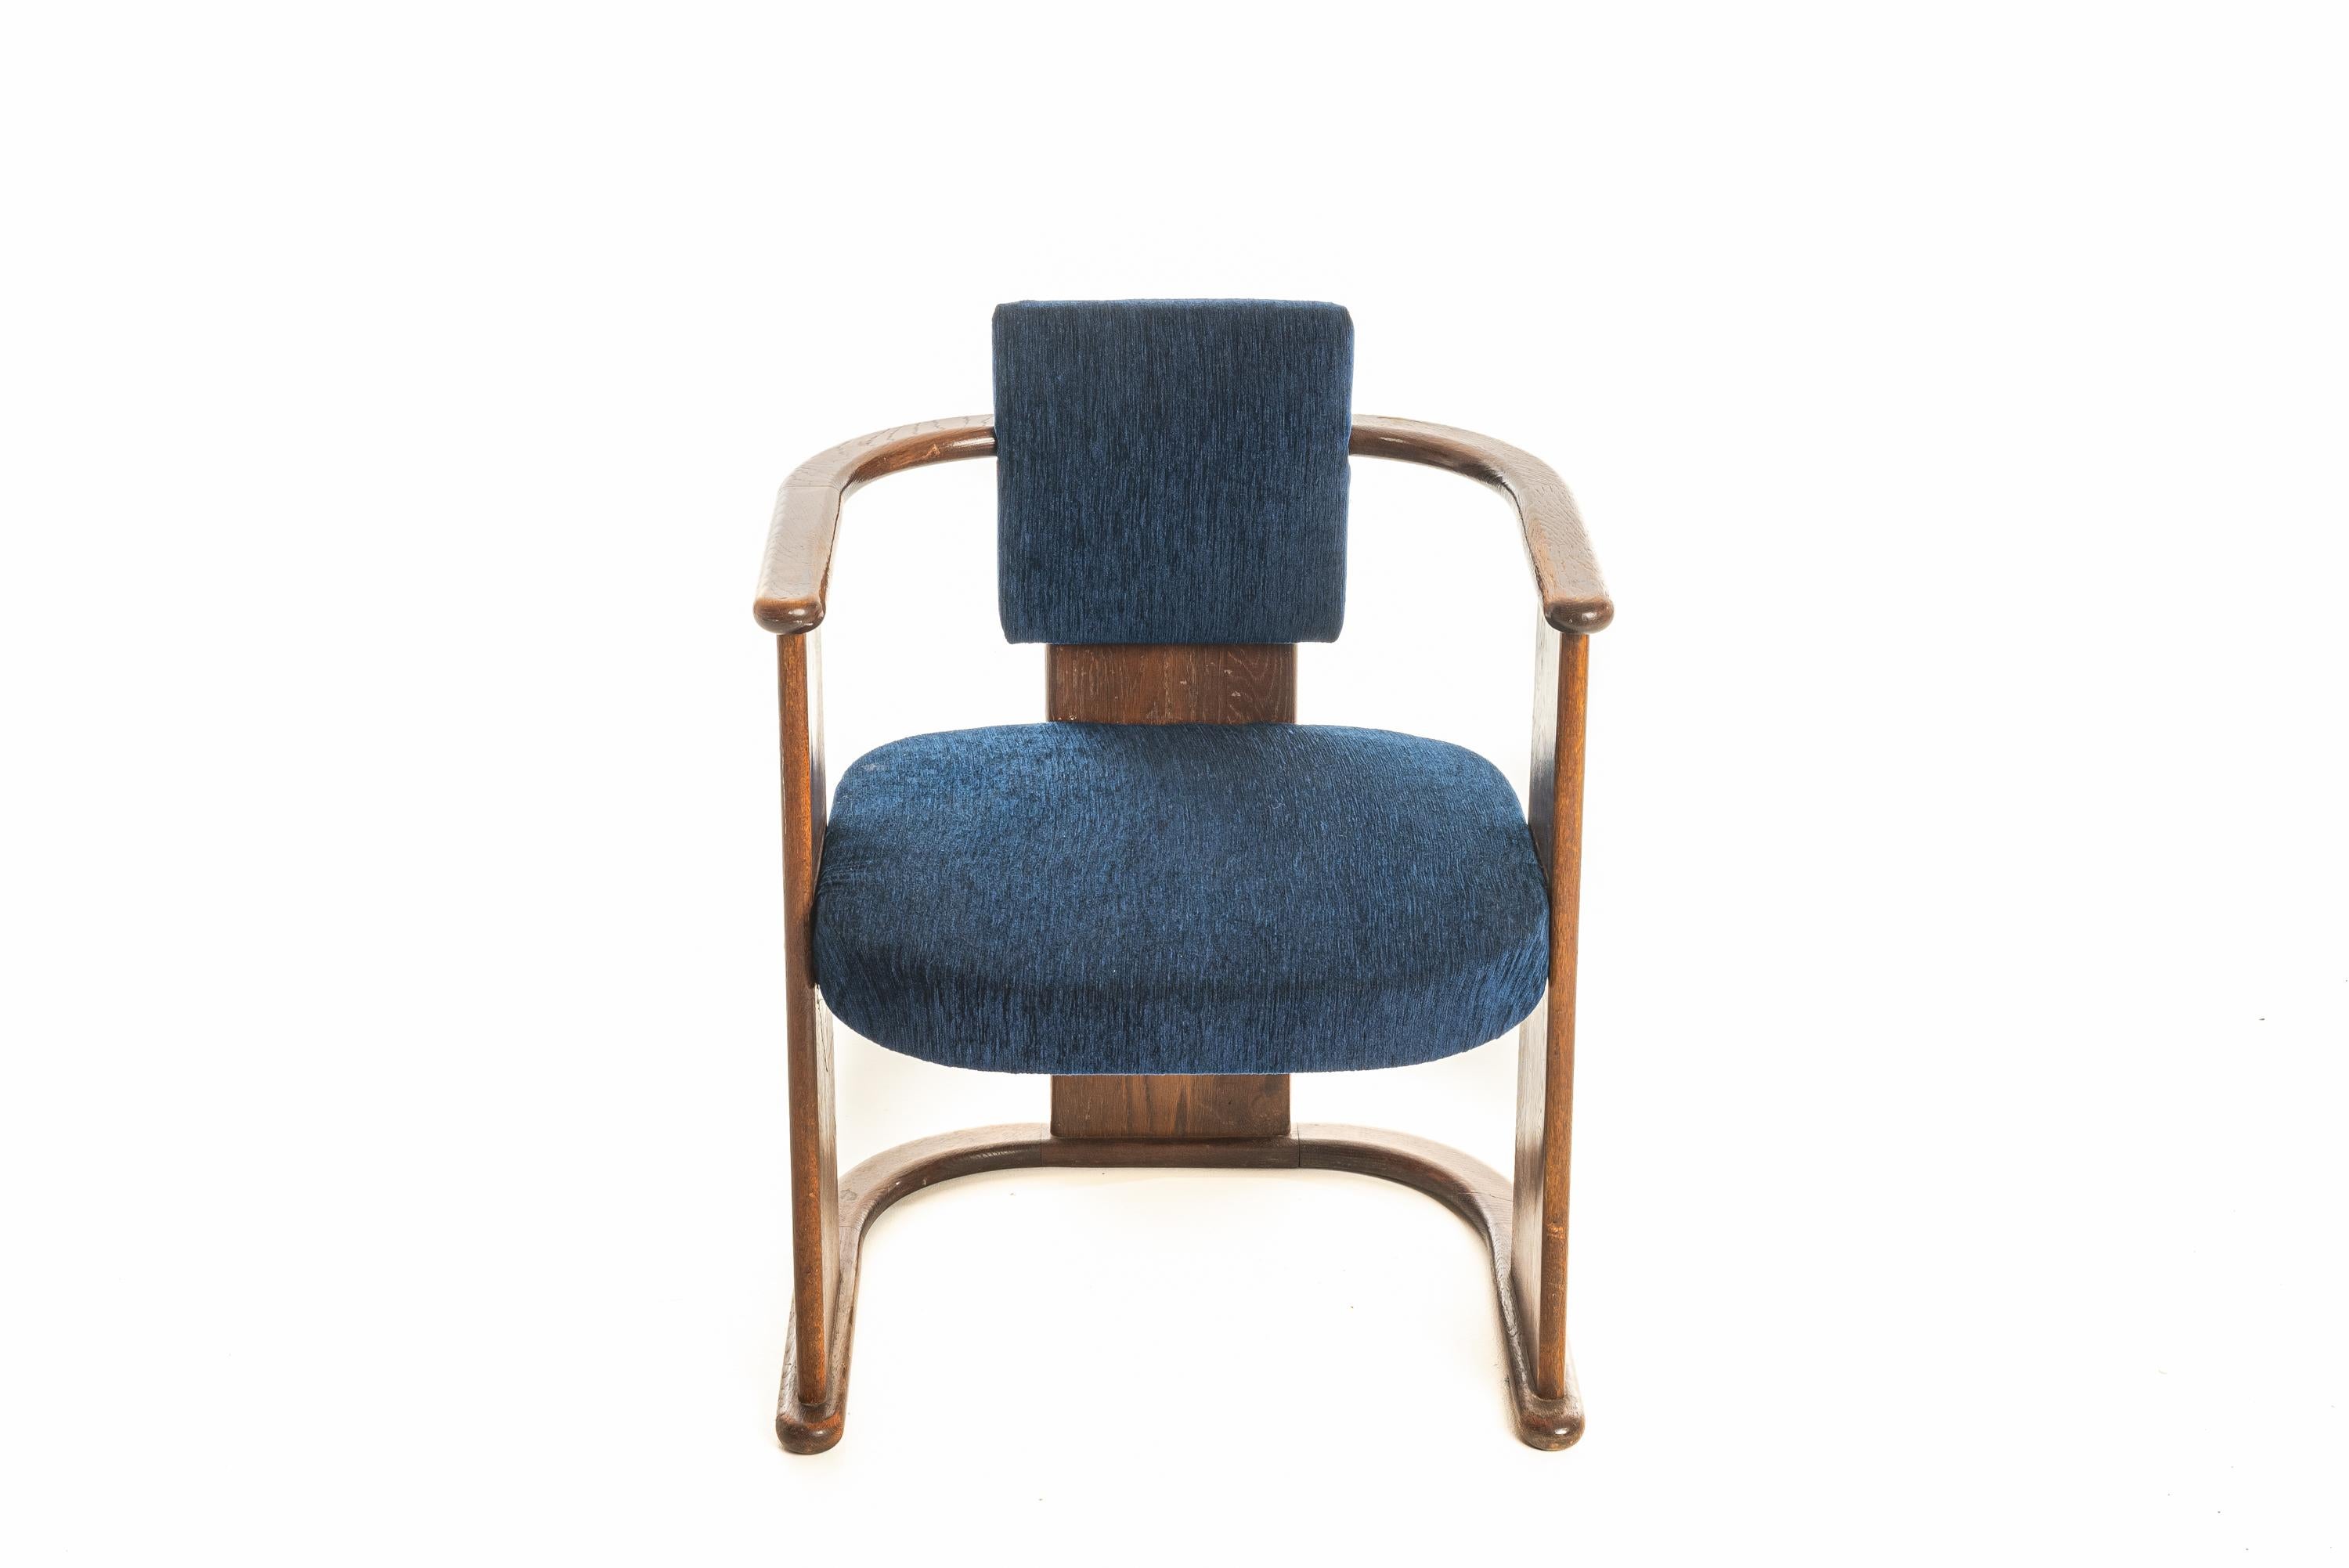 Bon exemple de chaise de style art nouveau,  Cadre en chêne massif. Le cadre est en bon état et solide, la sellerie a été refaite récemment.